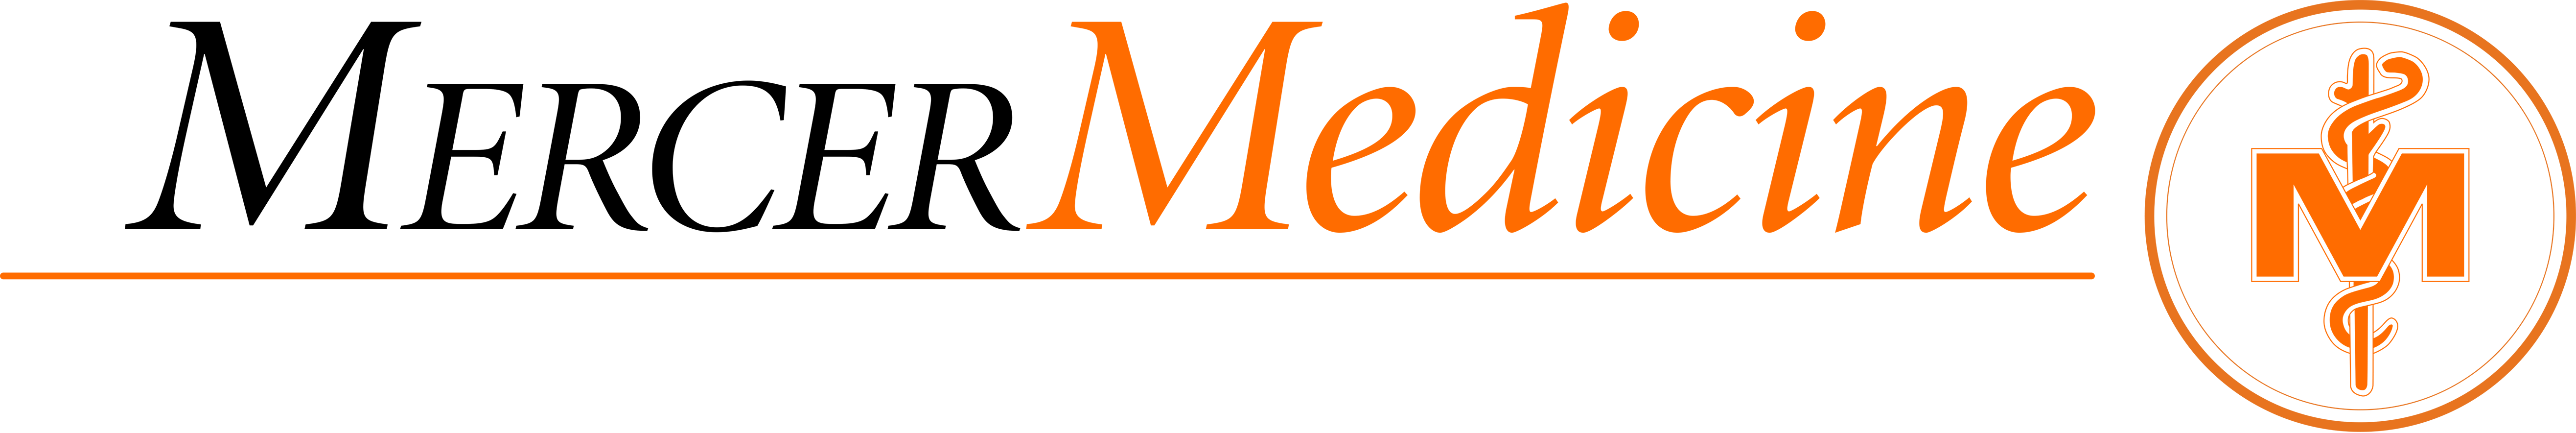 Mercer Logo - Mercer Medicine | Serving Middle and South Georgia